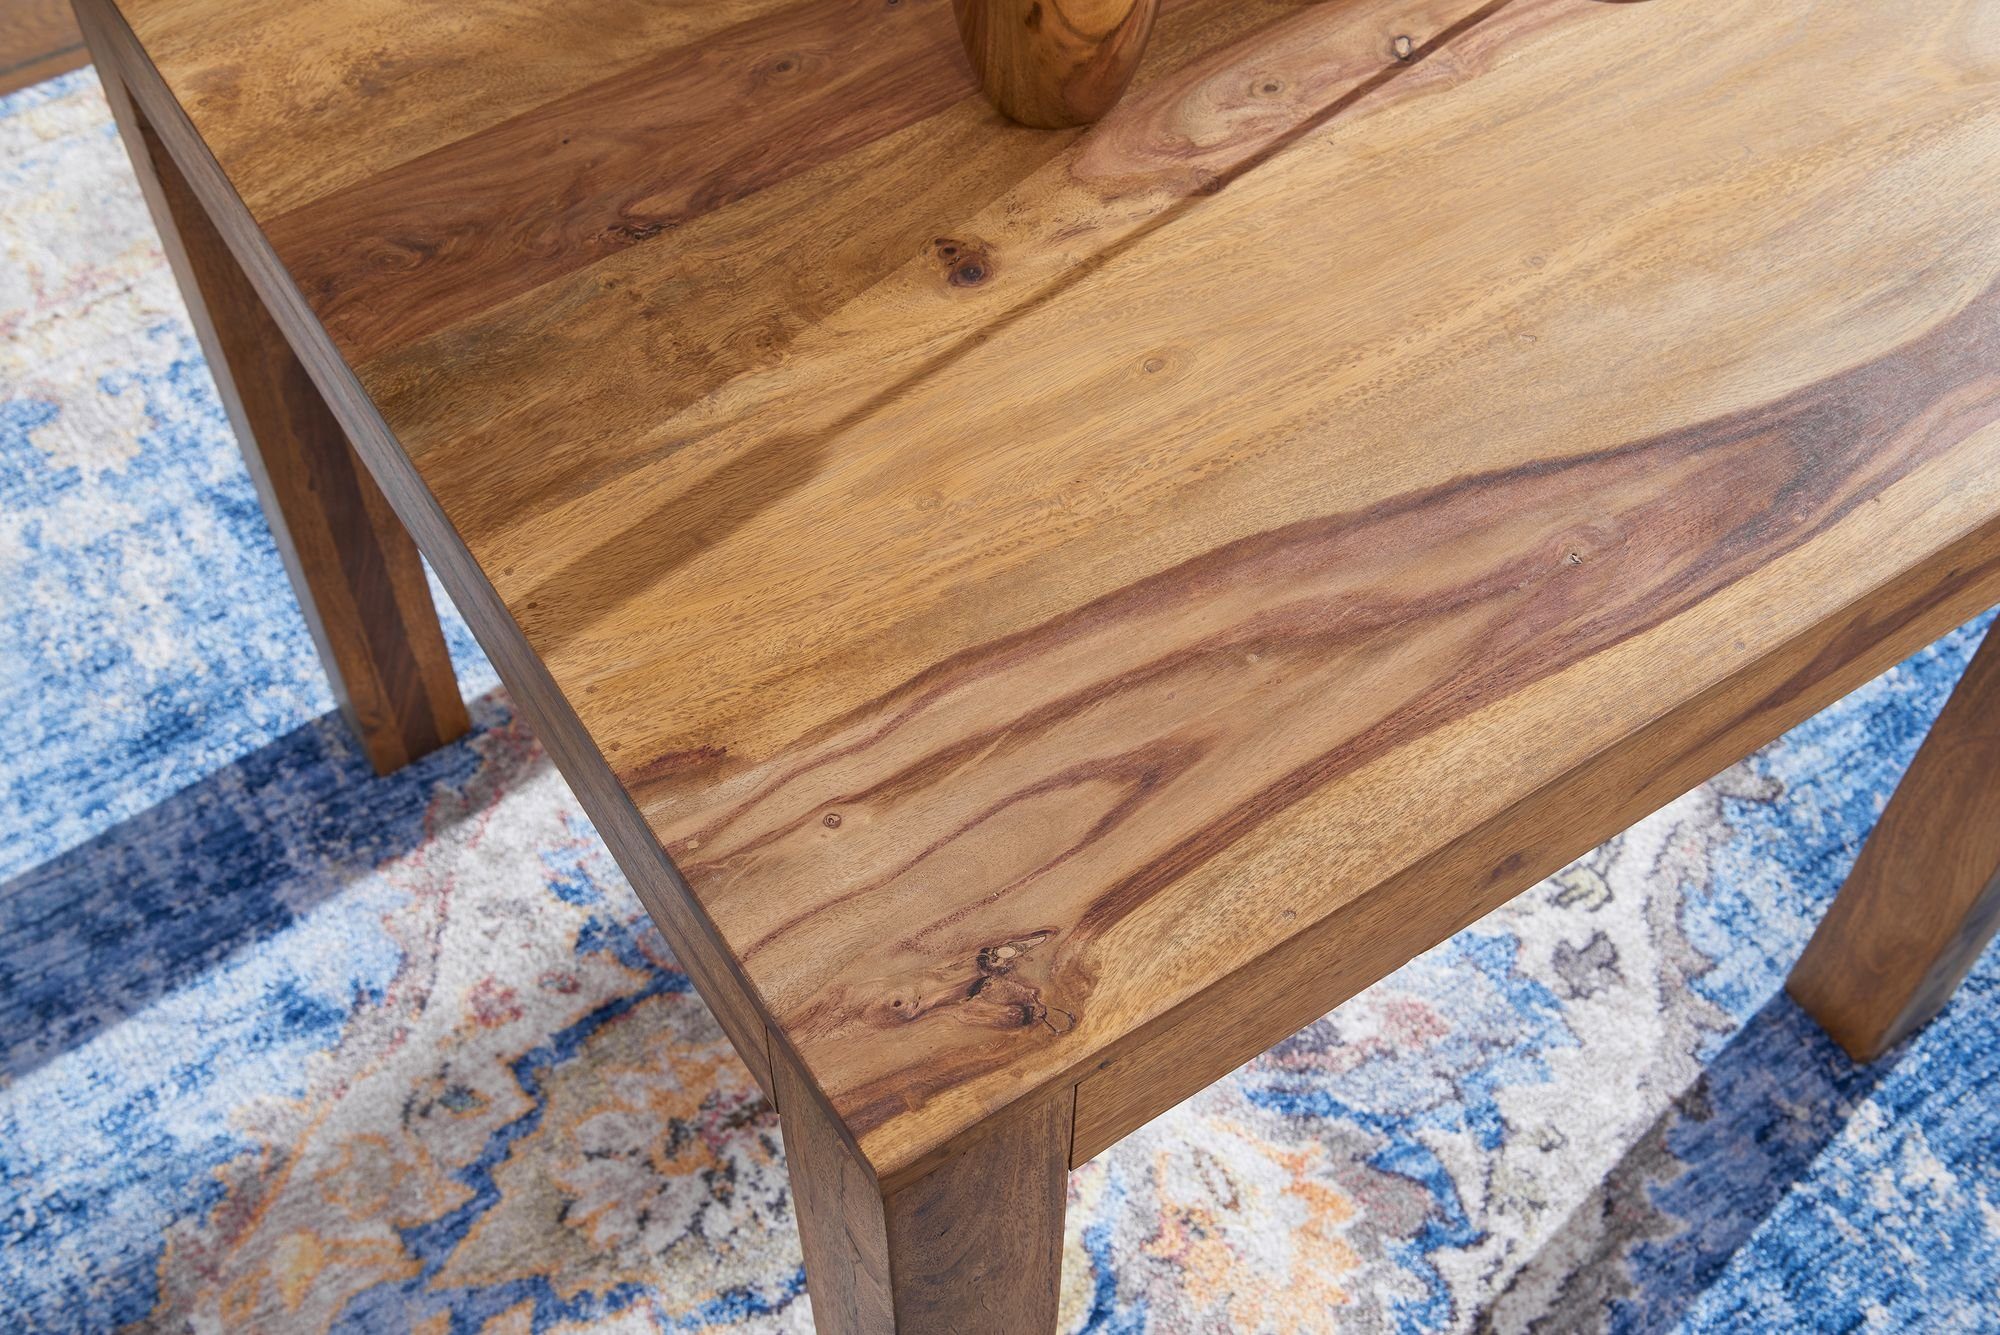 Esstisch Braun mit Holzmaserung Esszimmertisch | Massiv – Braun KADIMA Tischplatte DESIGN | Braun Quadratische